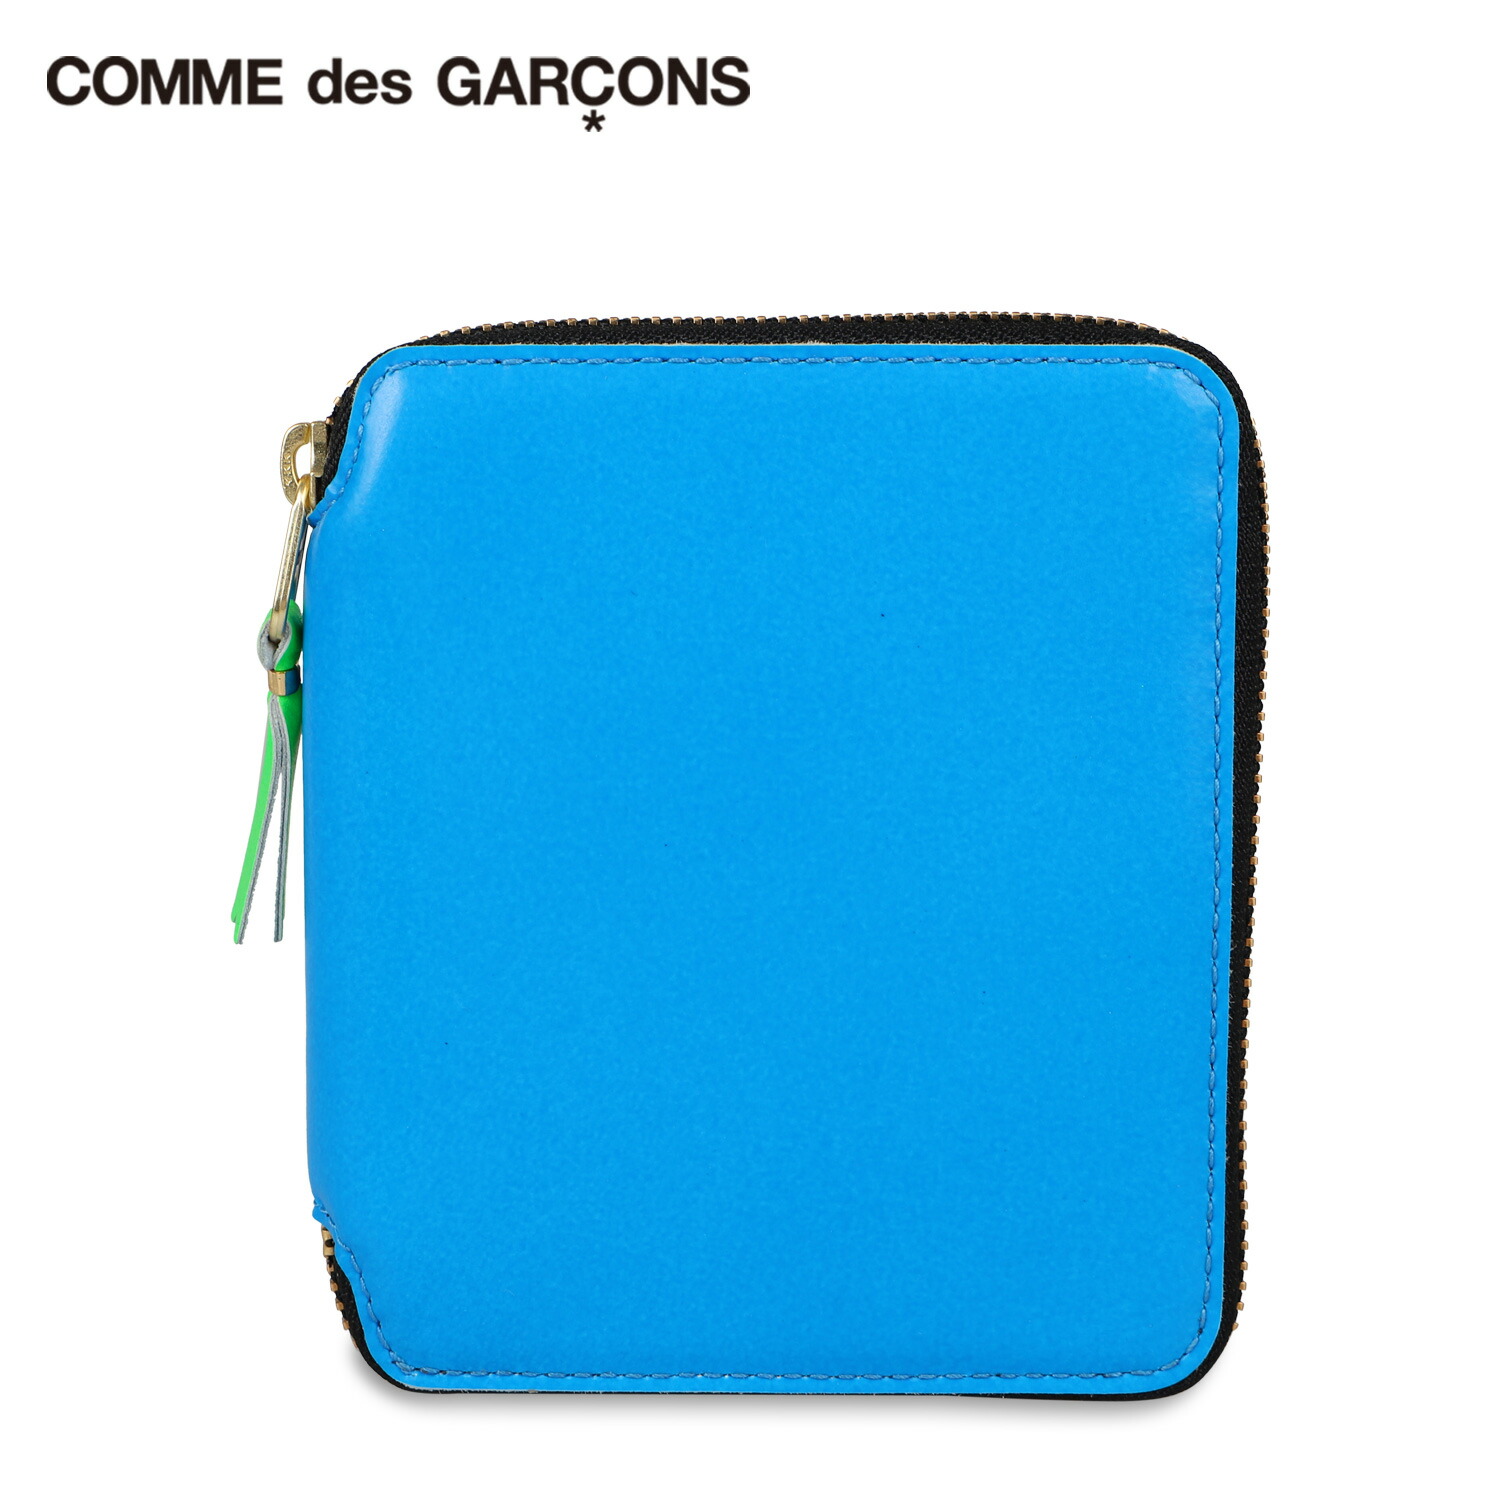 COMME des GARCONS コムデギャルソン 財布 二つ折り メンズ レディース